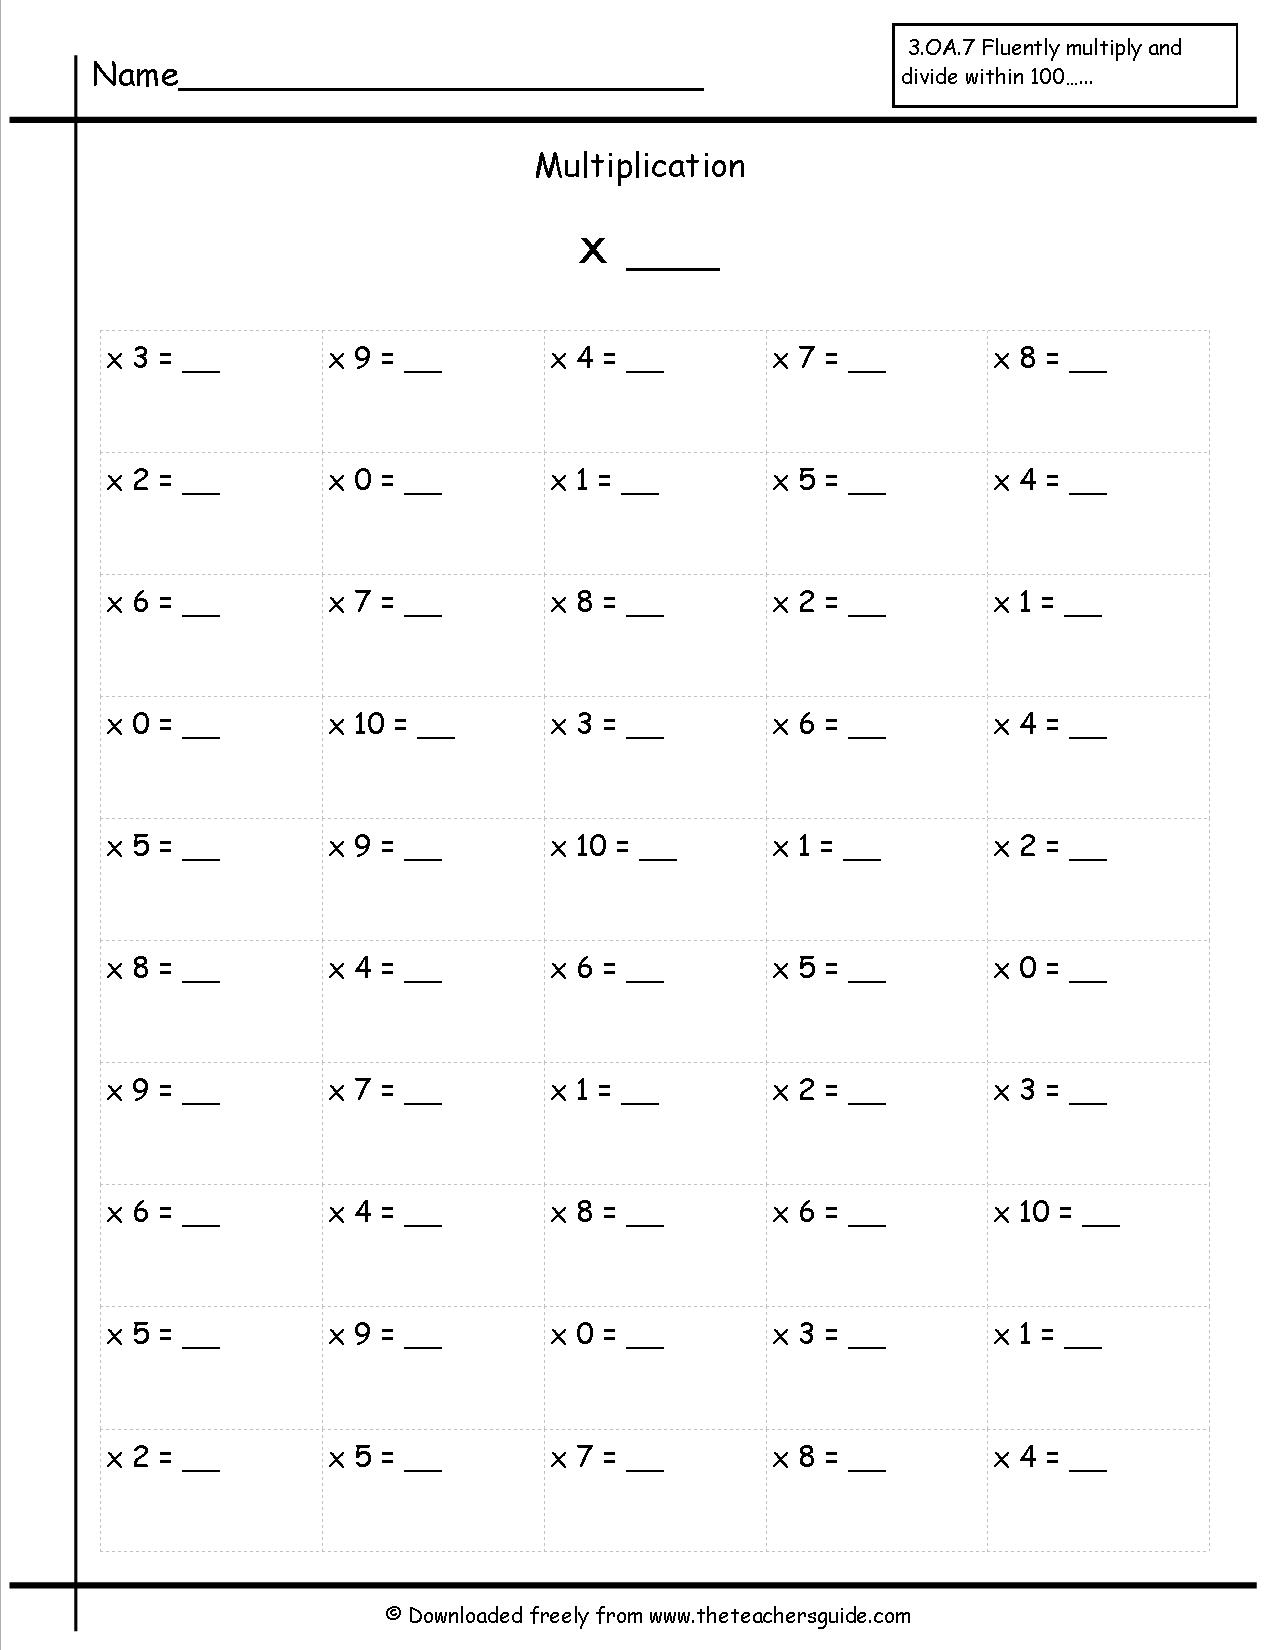 Multiplication Worksheet 0 6 | Printable Worksheets And with Printable Multiplication Quiz 0-10